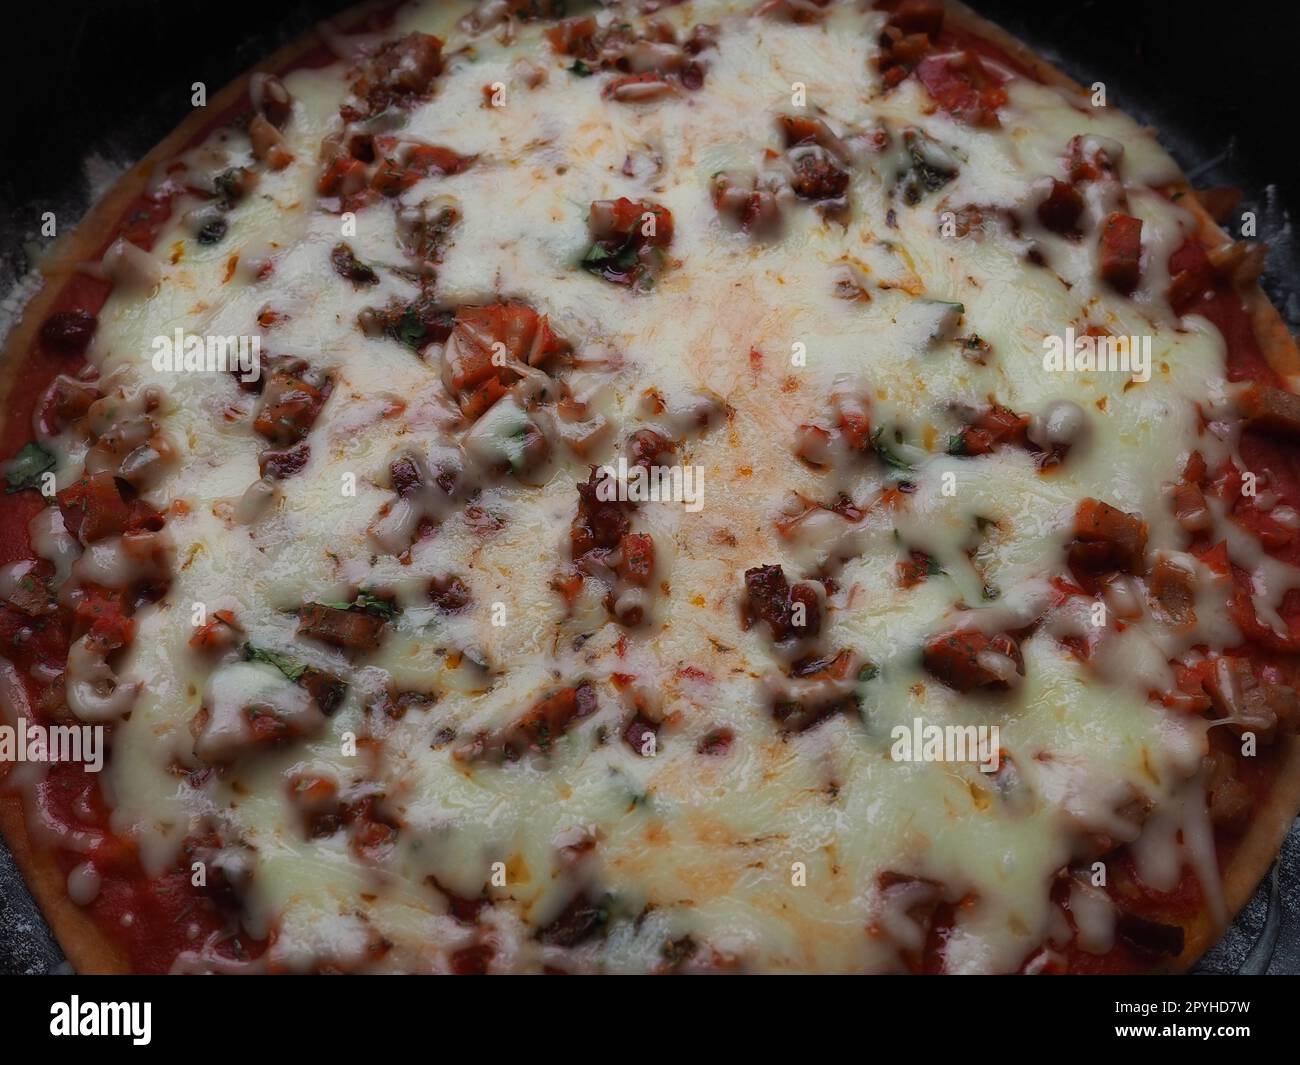 primo piano sulla pizza intera. Deliziosa pizza rotonda succosa con pomodori e salame. Il formaggio fuso viene versato sulla superficie della torta al forno. Controluce. Messa a fuoco morbida e sfocata Foto Stock